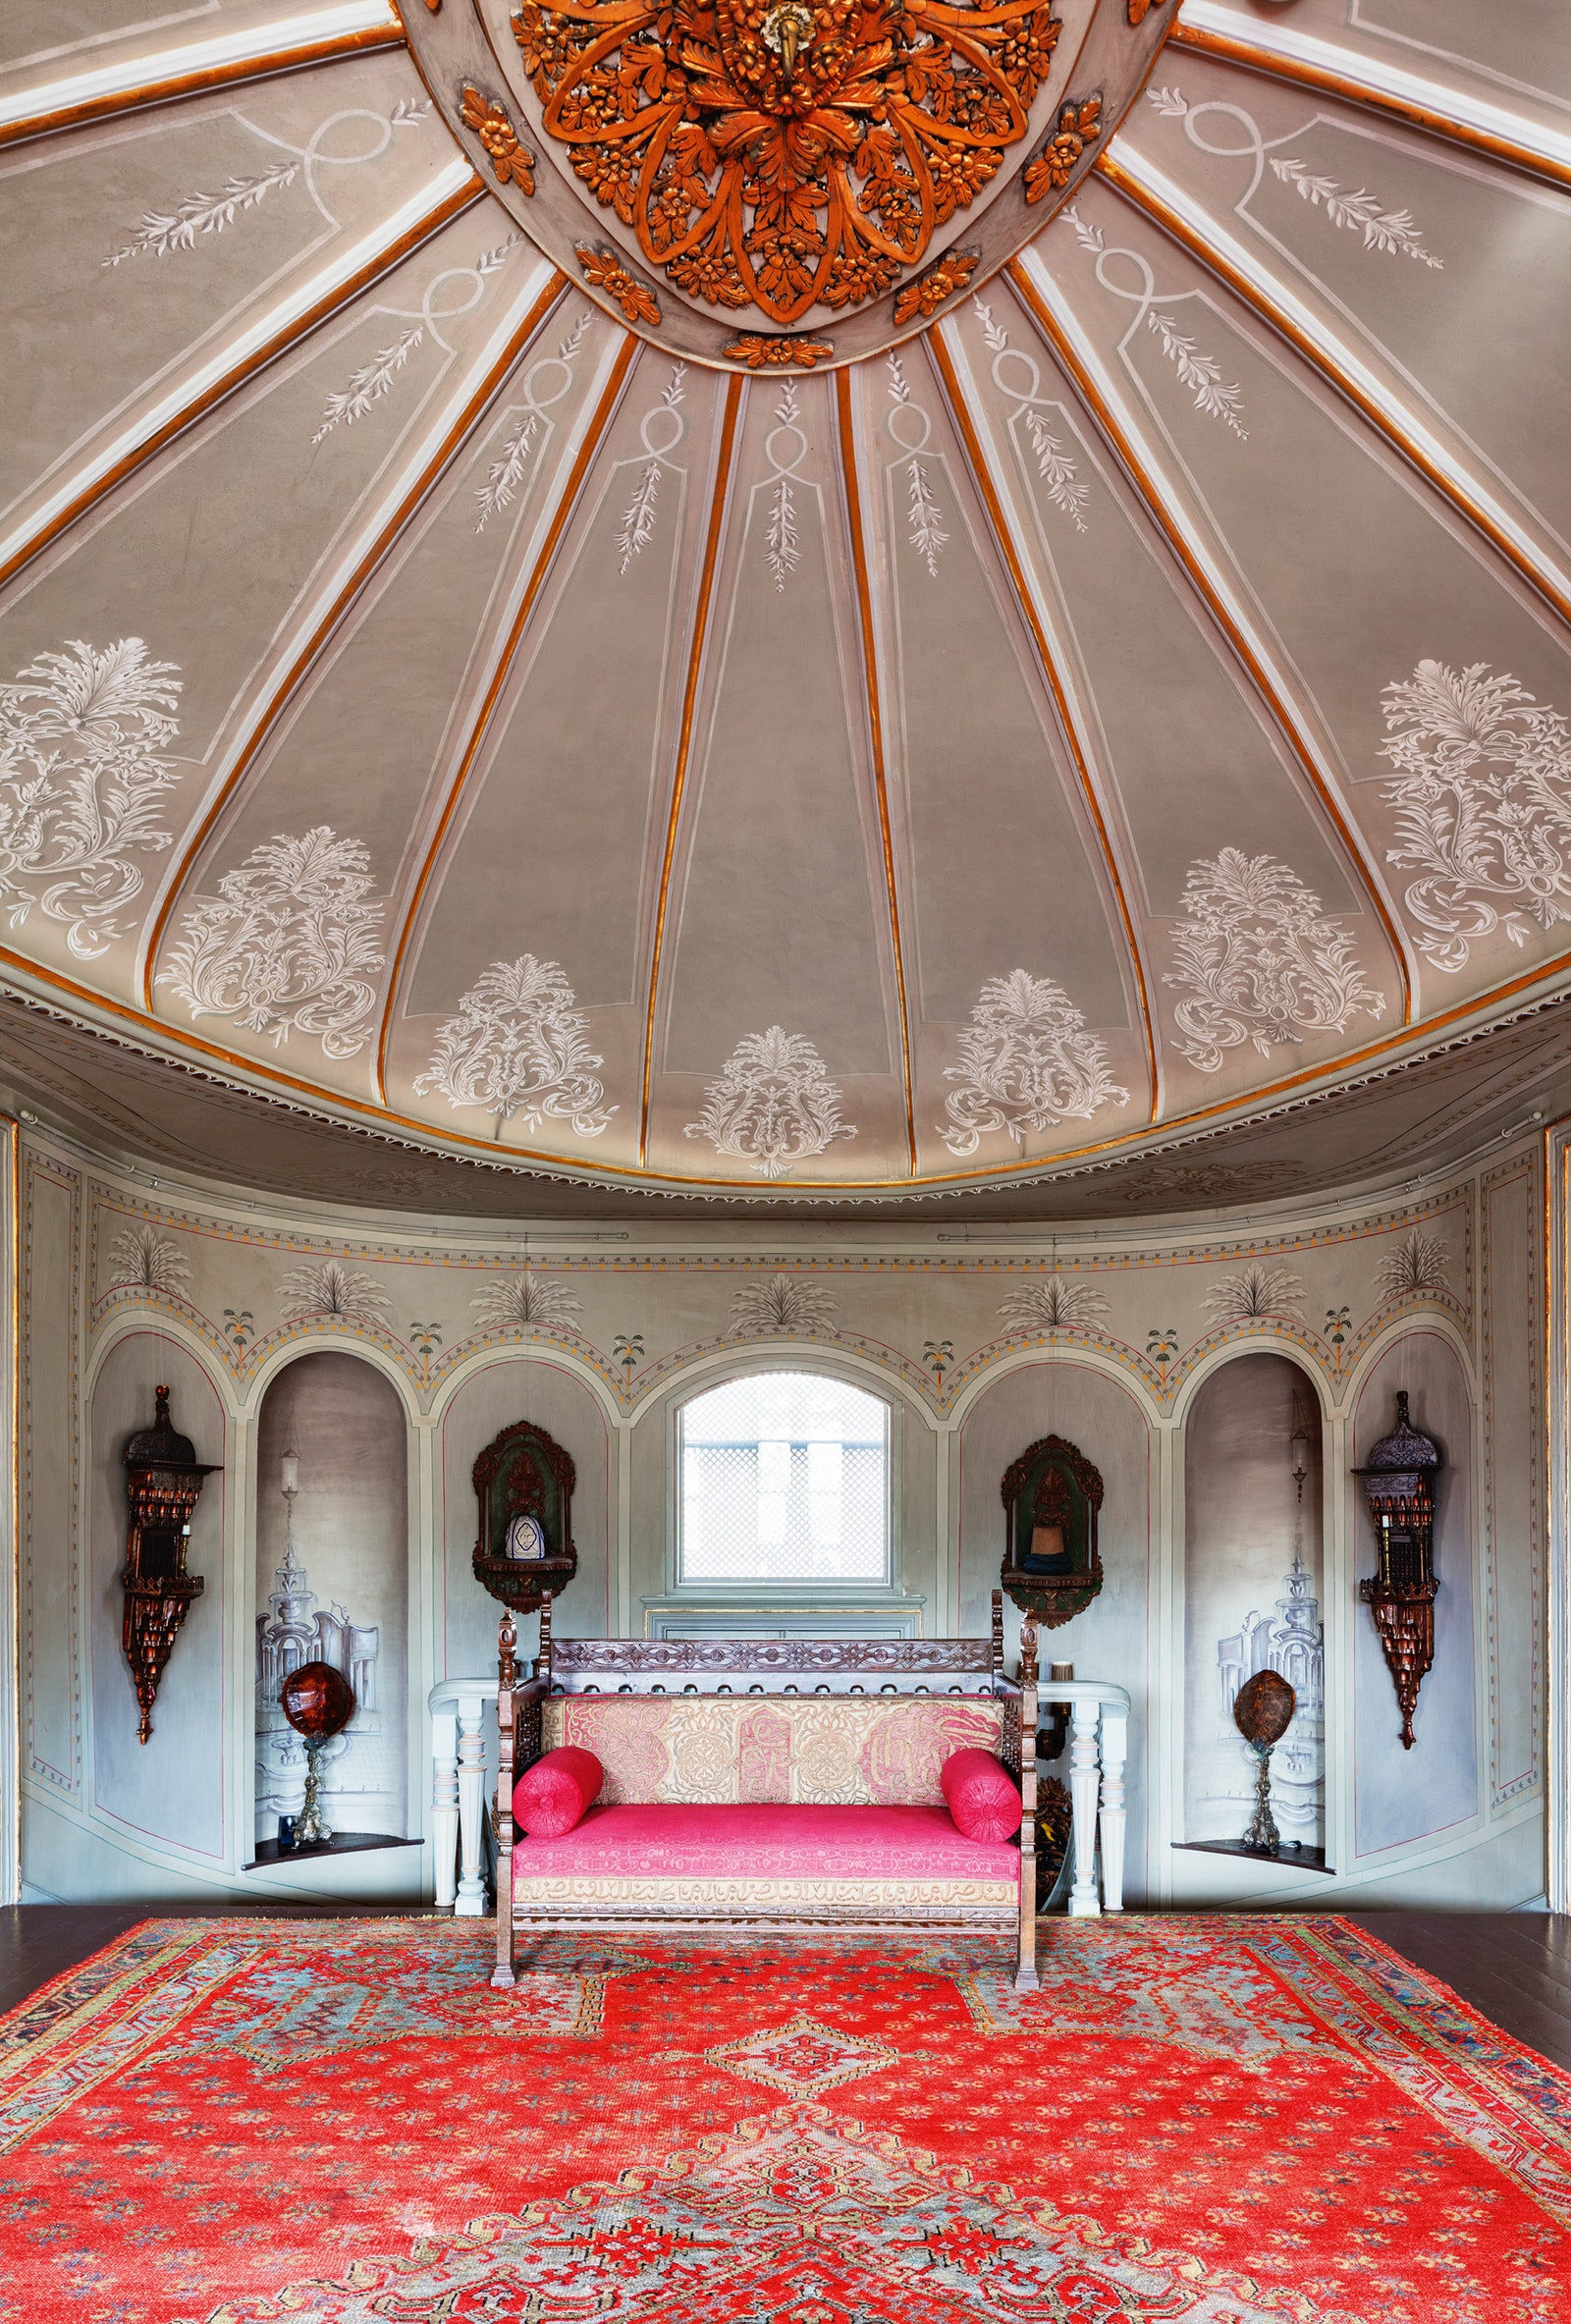 Главная приемная. Купольный потолок вдохновлен османскими шатрами. Диван времен Османской империи. На деревянном полу —...